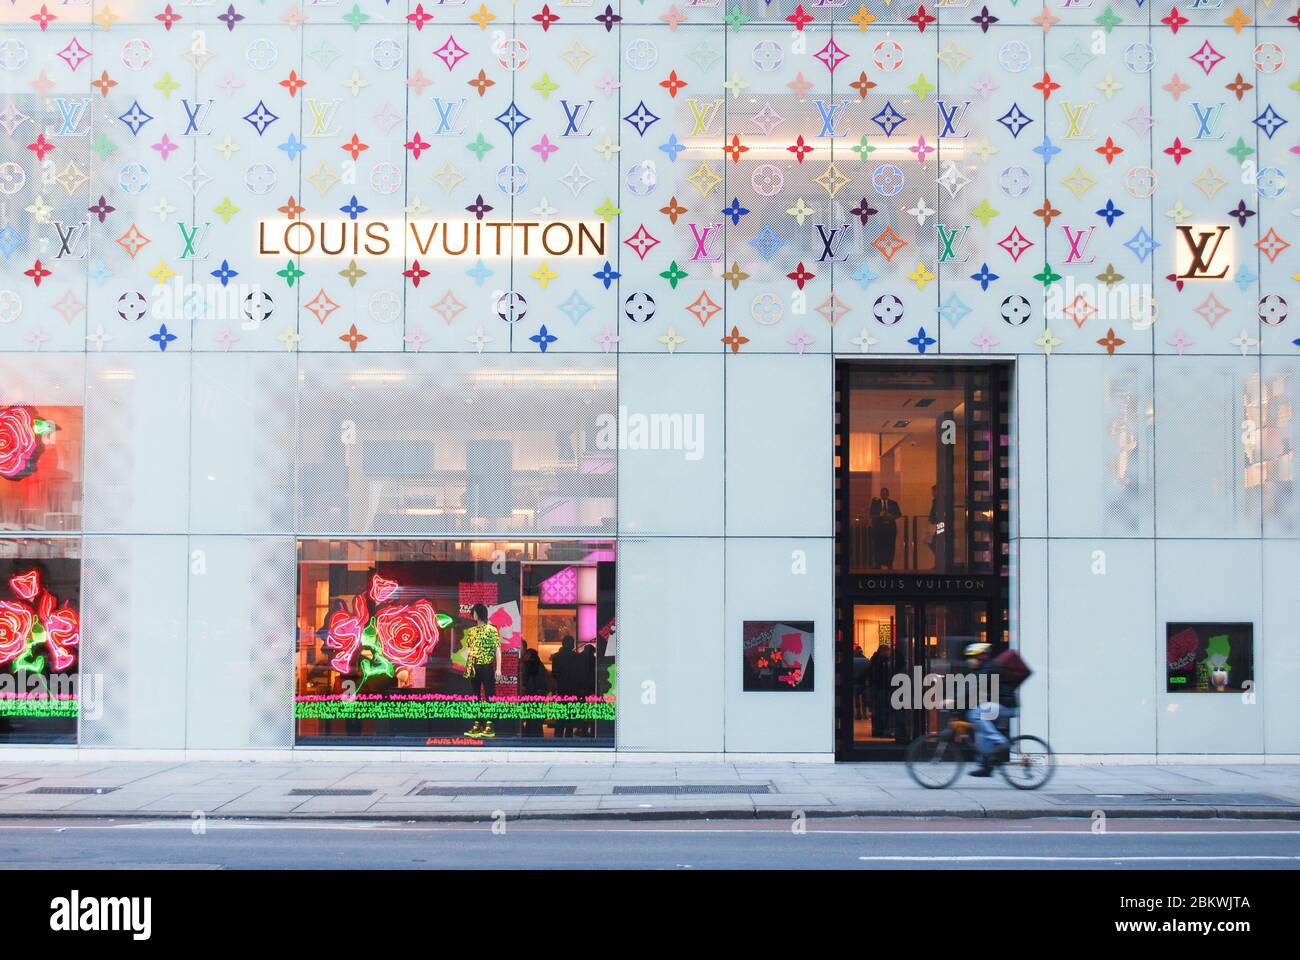 LOUIS VUITTON NEW YORK 5TH AVENUE - 300 Photos & 200 Reviews - 1 E